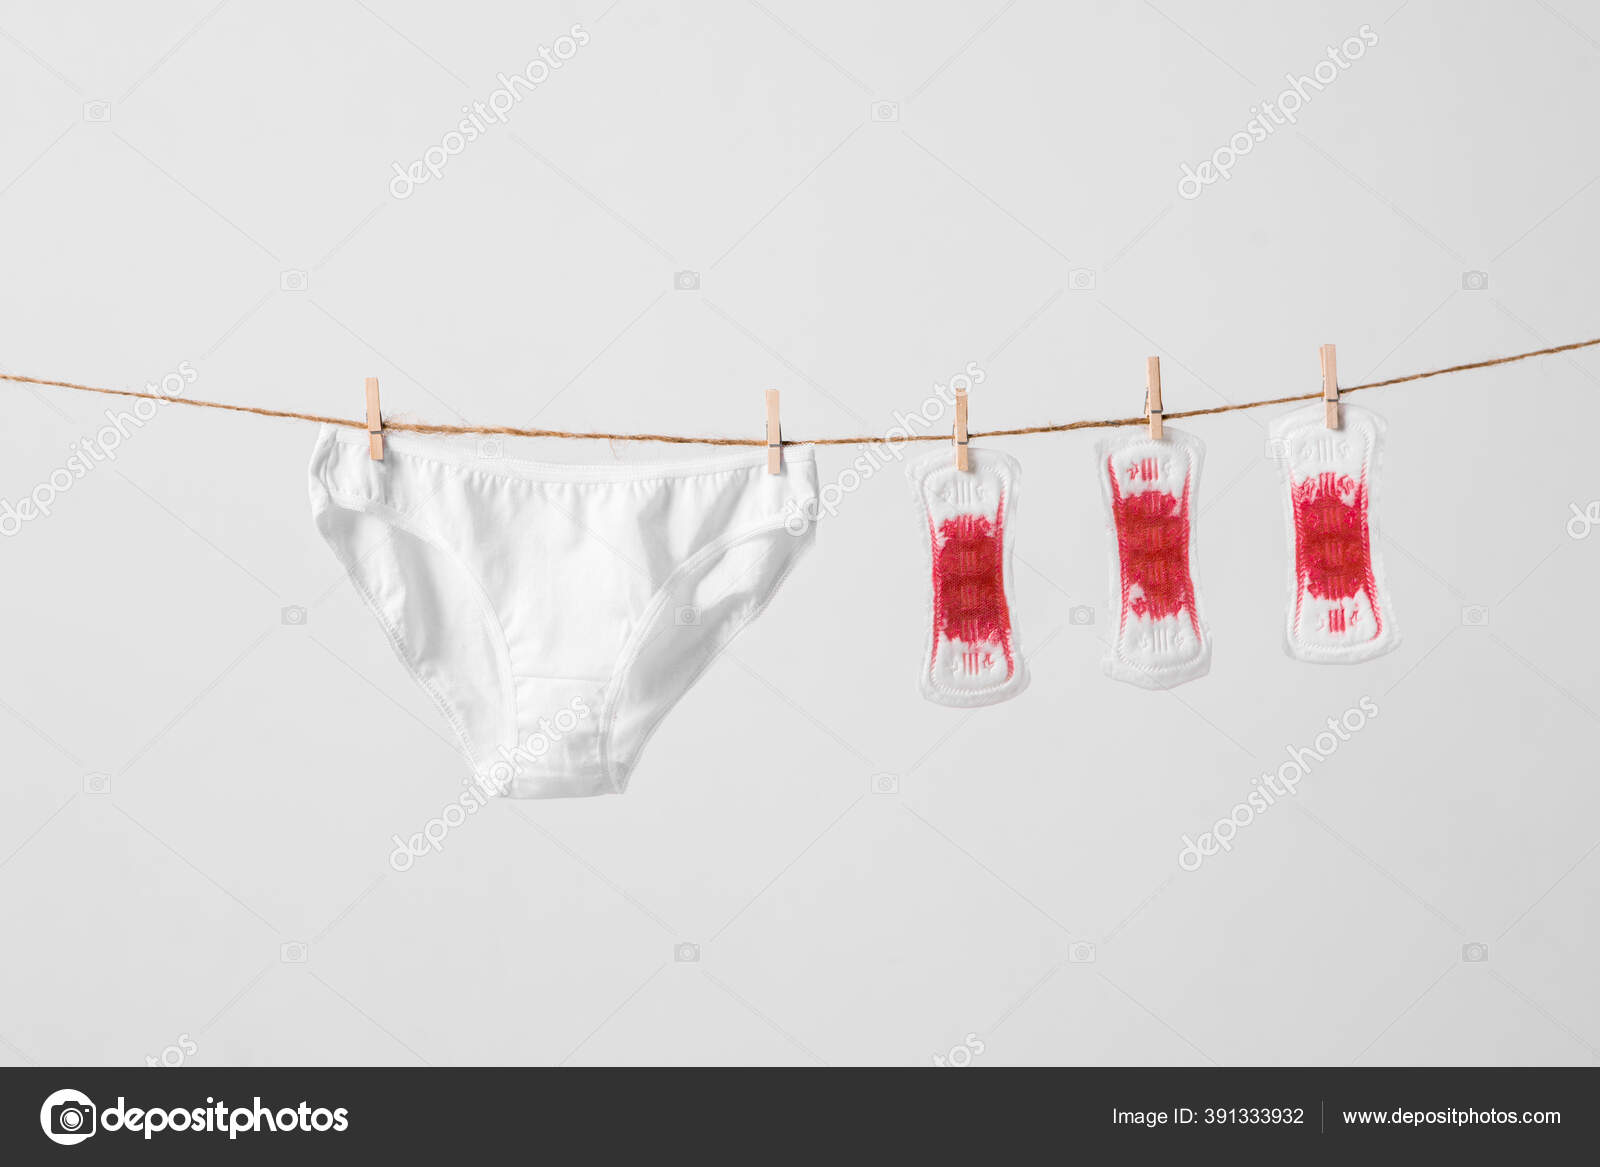 Almohadillas para mujer y ropa interior en tendedero sobre fondo blanco. Fotografía conceptual para una mujer o feminista o anuncio: fotografía stock © georgeeb22 #391333932 |